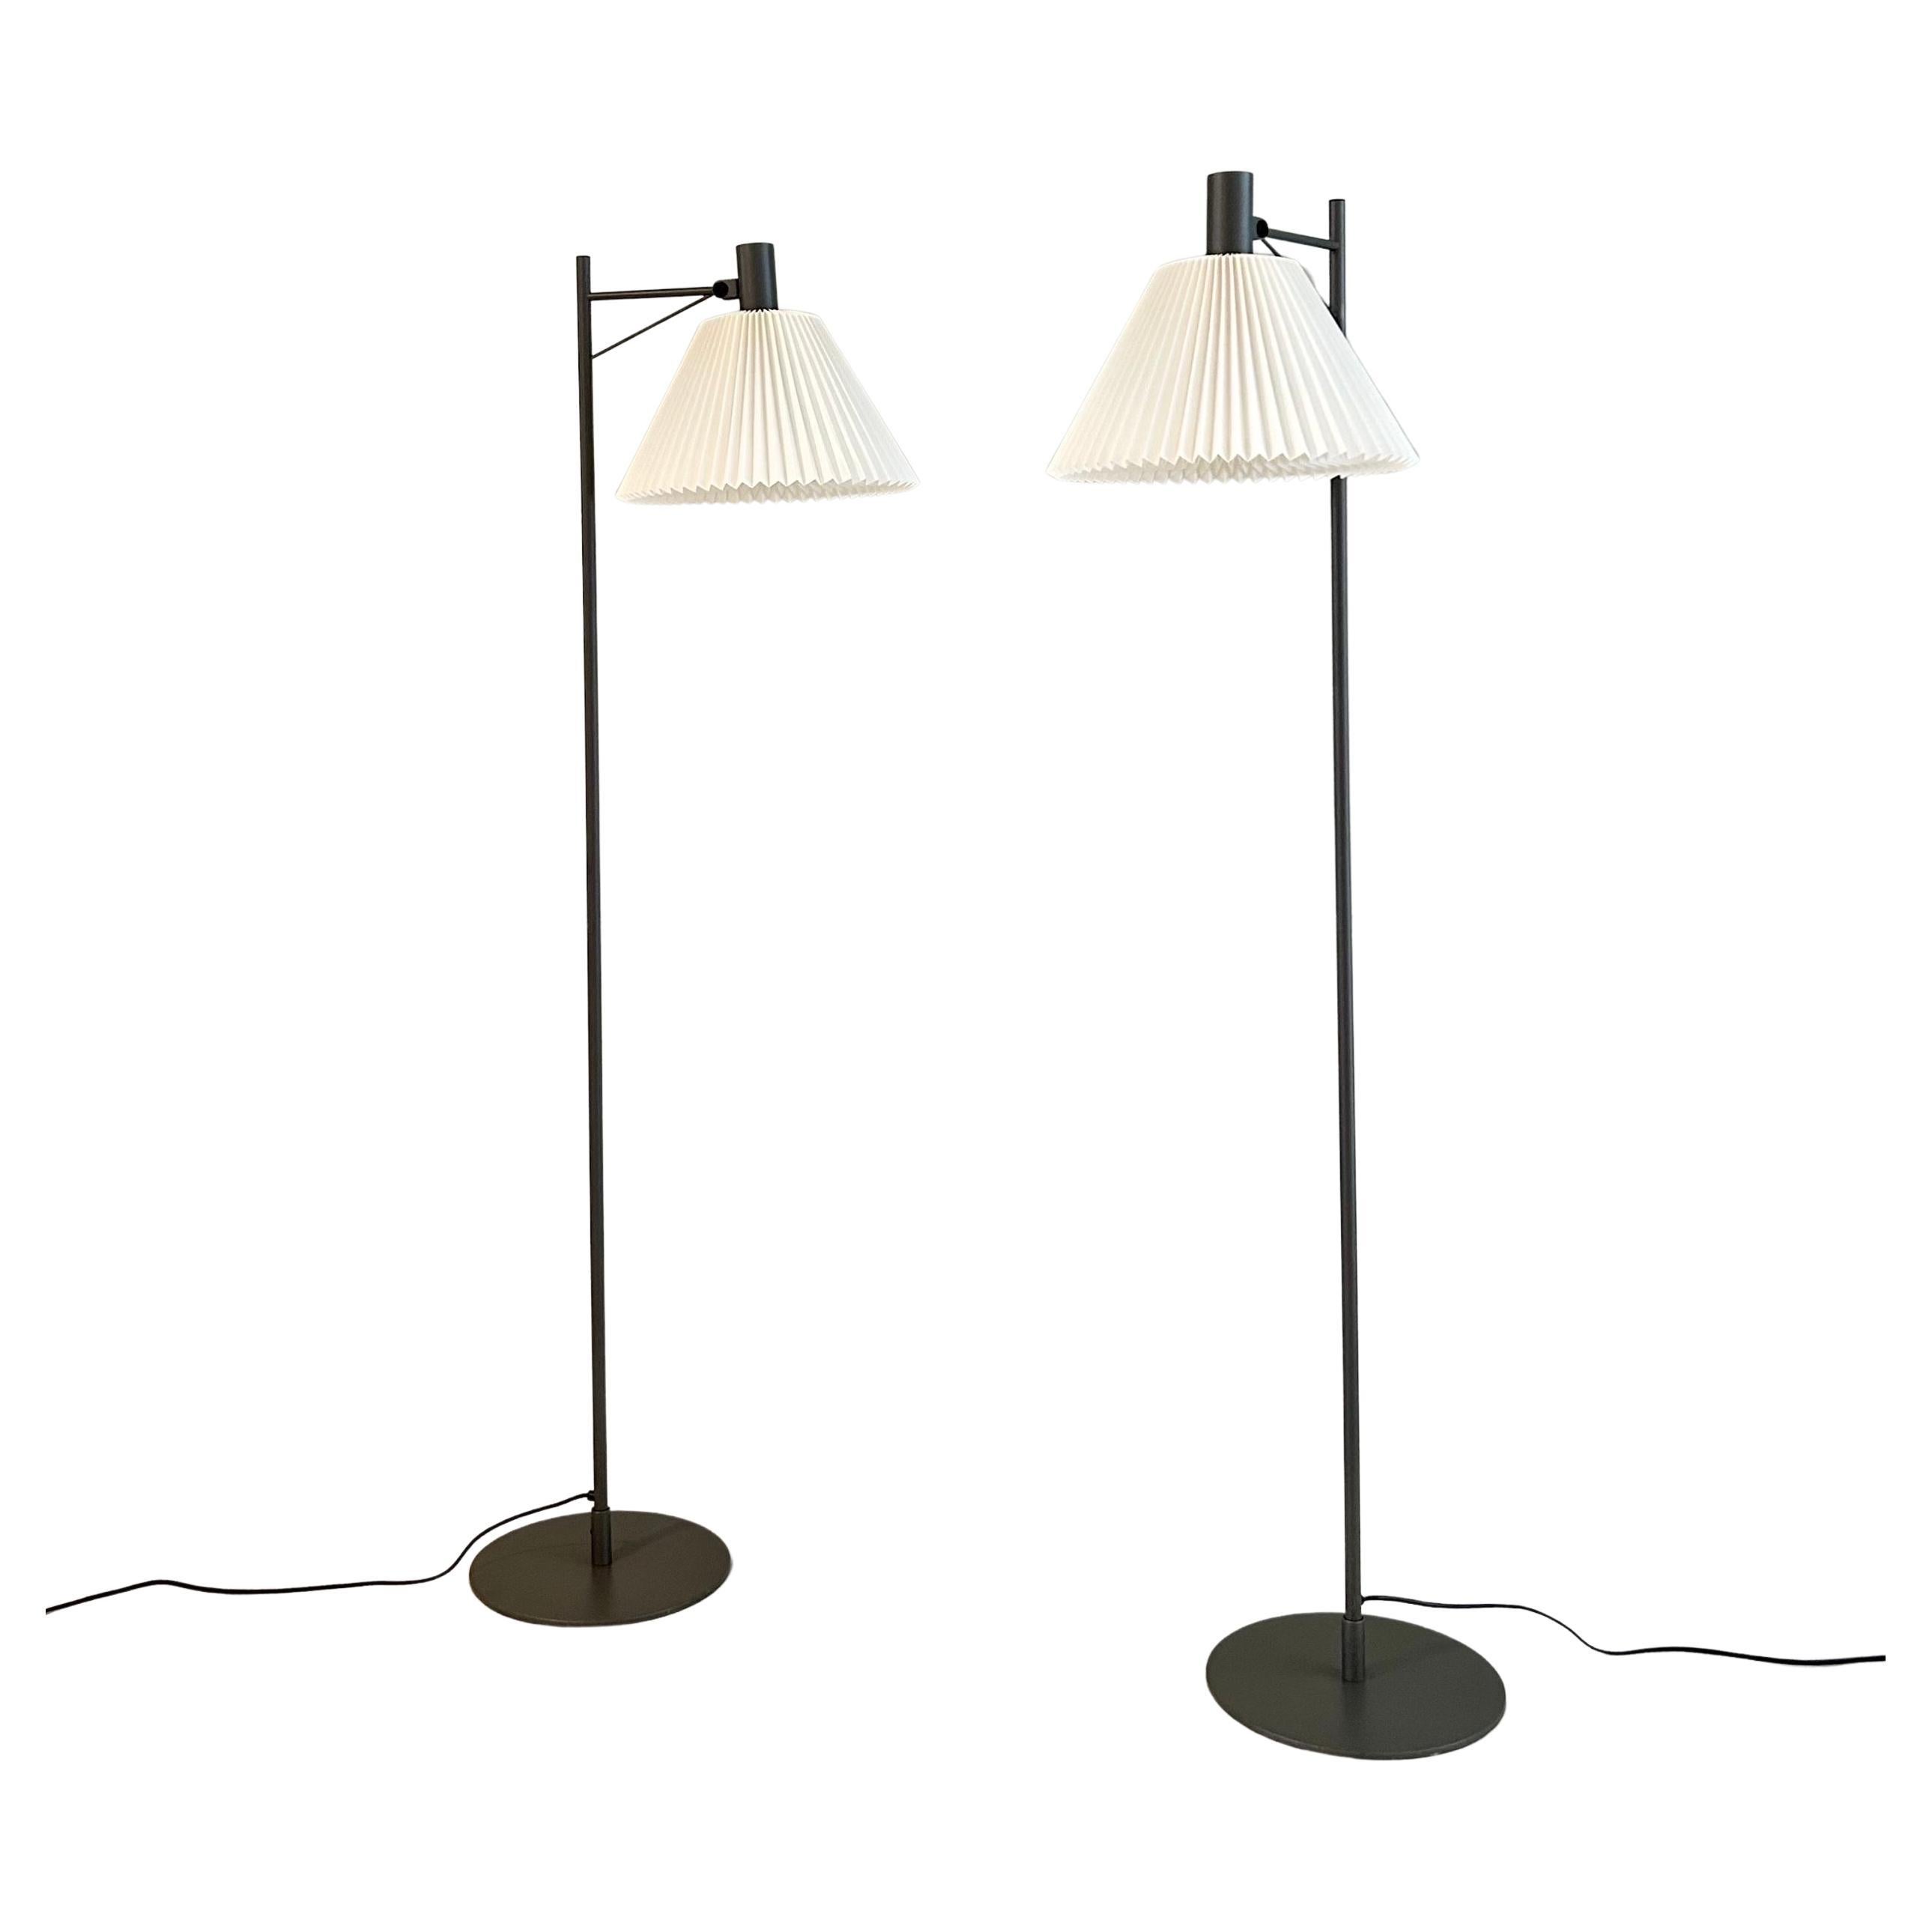 Set of Danish Modern Le Klint Floor Lamps, 1970s, Denmark For Sale